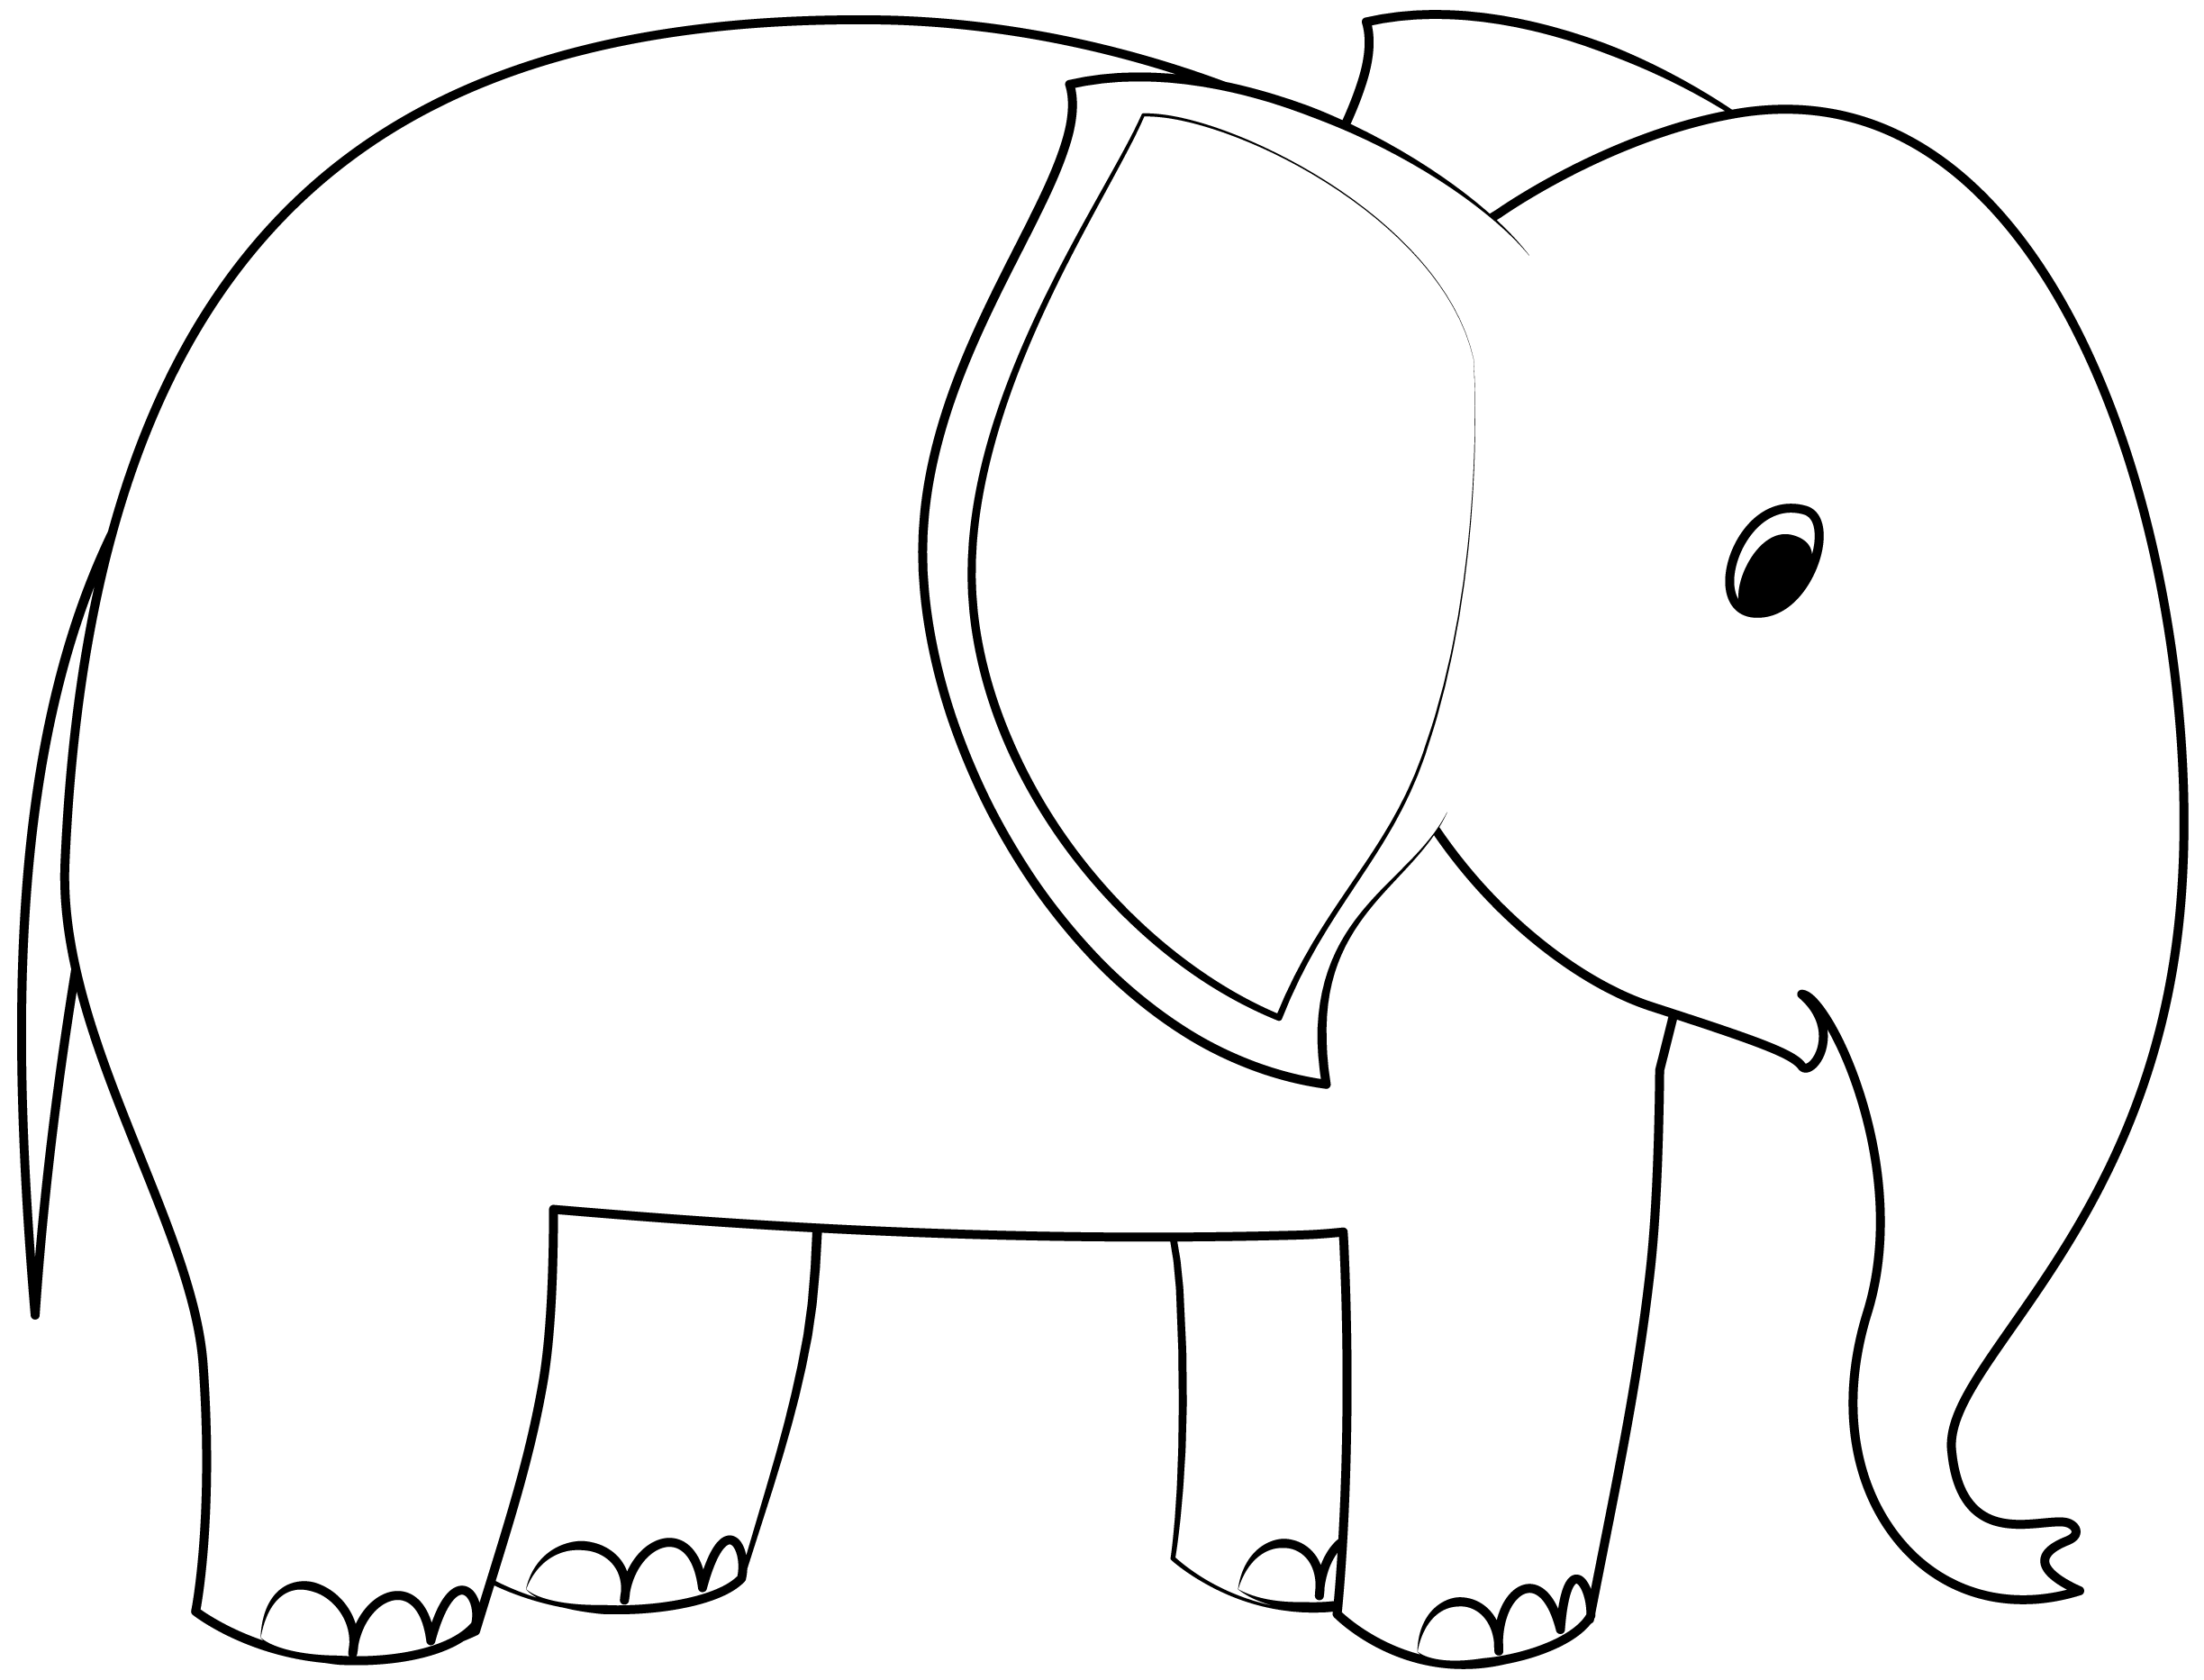 Elefant Druckbare Vorlage  Basteln Mit Papier  Vorlagen Zum  Within Blank Elephant Template